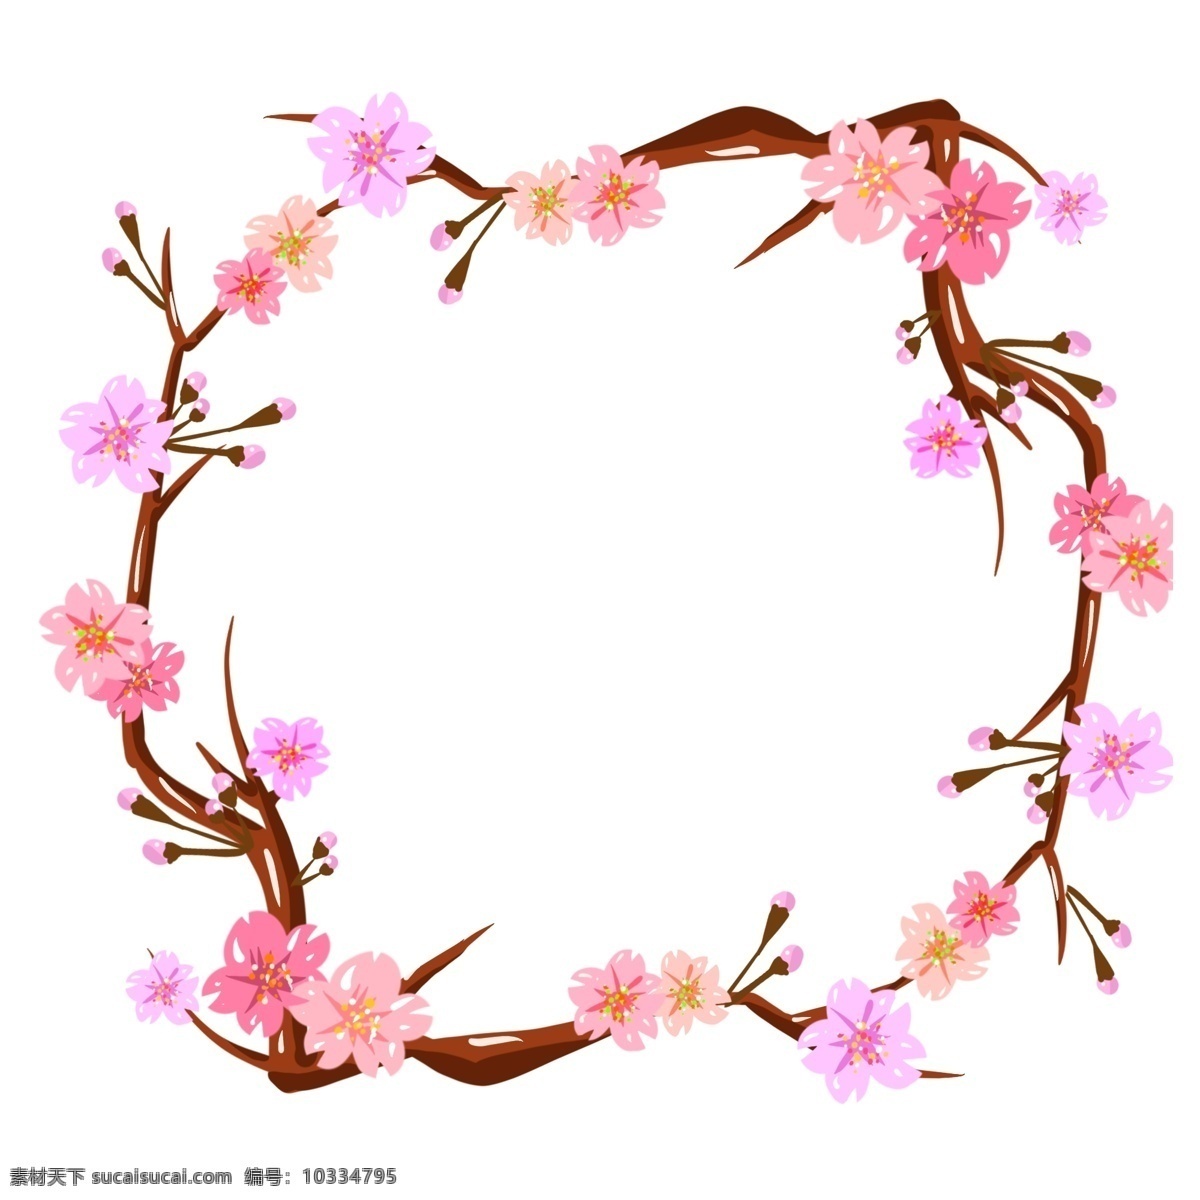 日本 樱花 装饰 花环 樱花装饰 花环边框 树枝边框 植物 粉色 红花 花枝 装饰边框 春光